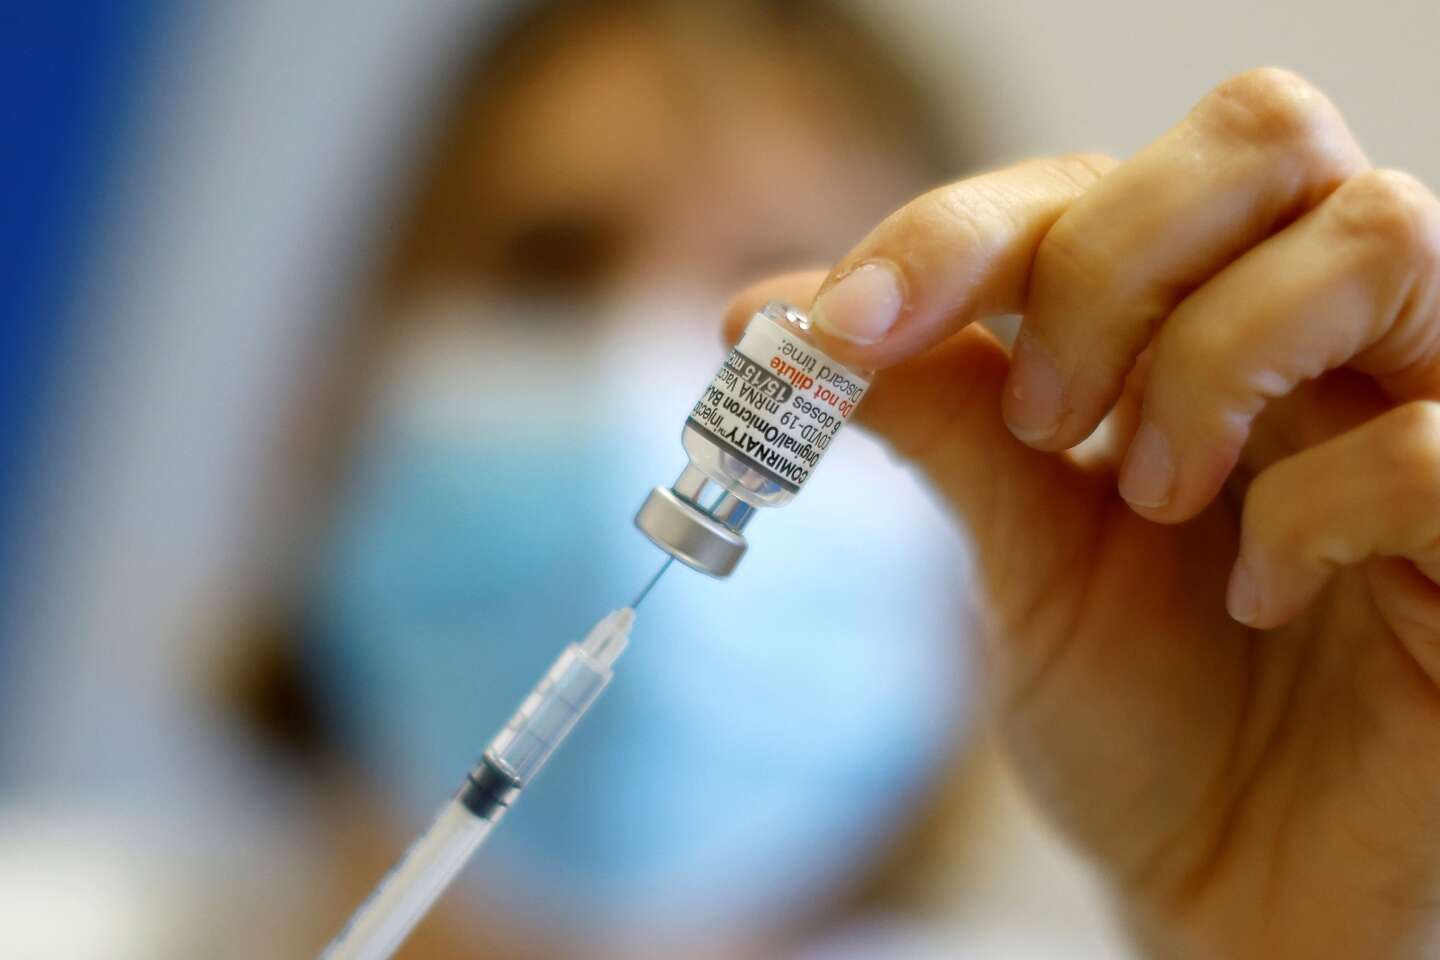 Französische Gesundheitsbehörden empfehlen, einige Kinder gegen Covid-19 zu impfen